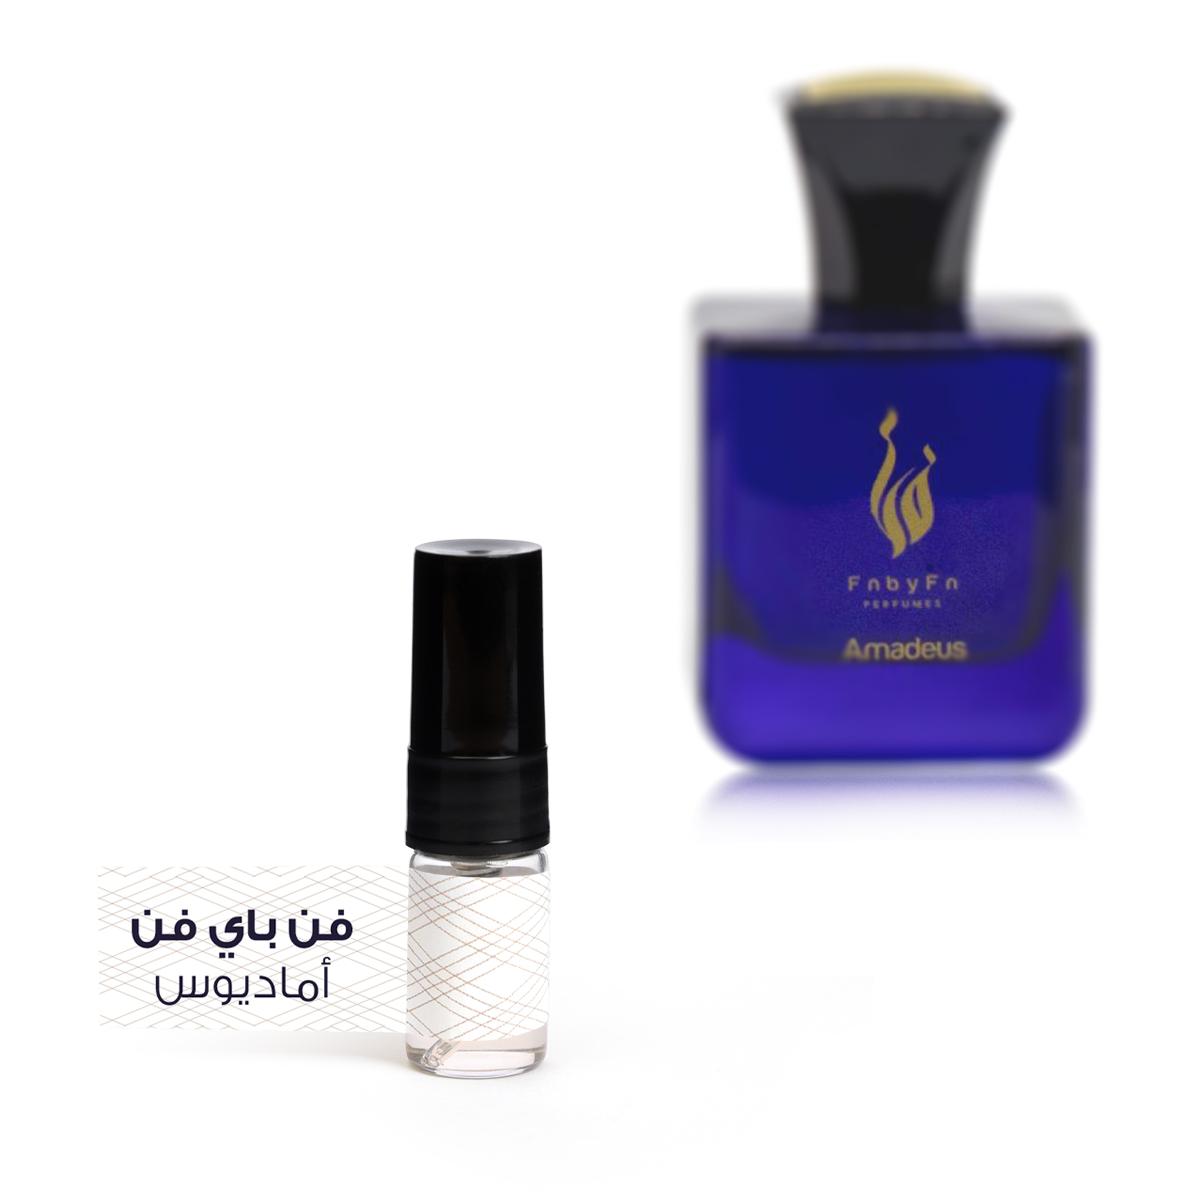 Oud Imperial Eau De Parfum - 2ML - Unisex   